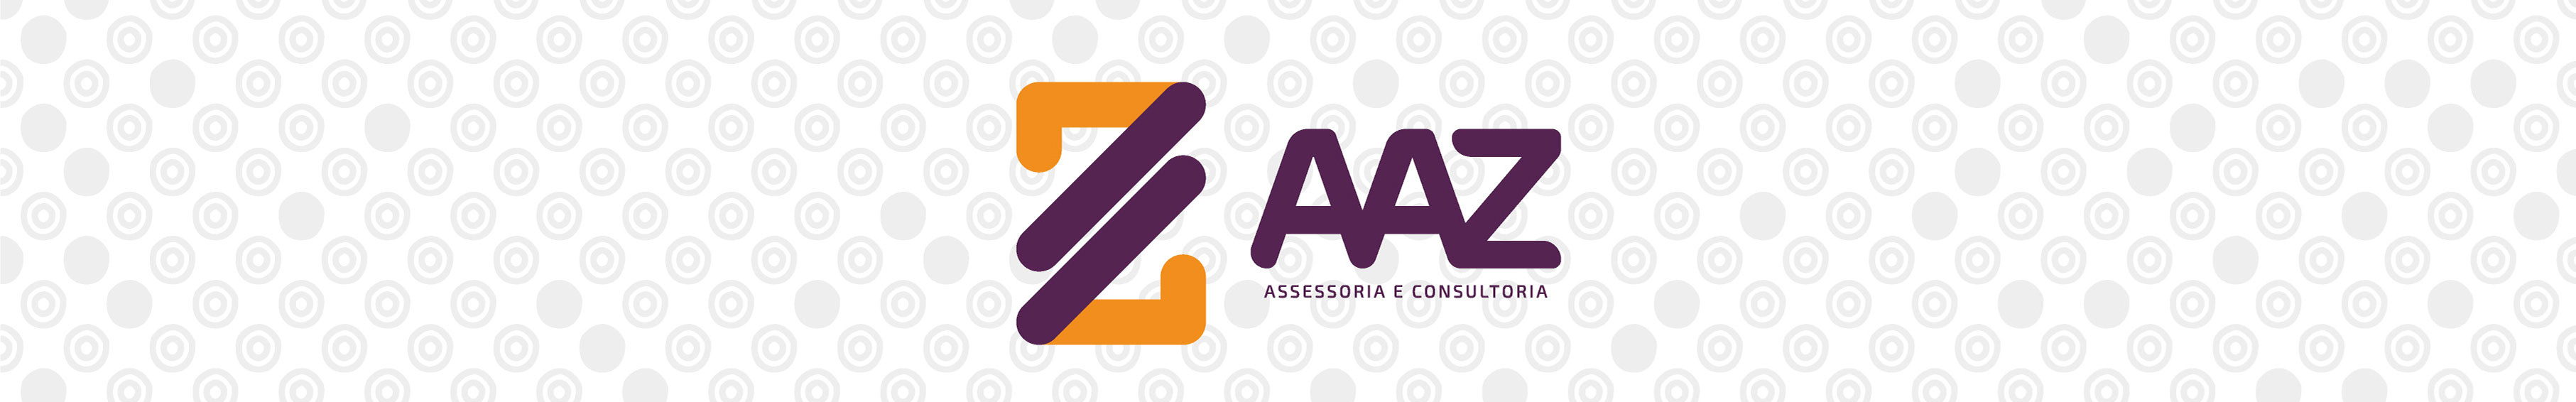 AaZ Assessoria e Consultoria's profile banner